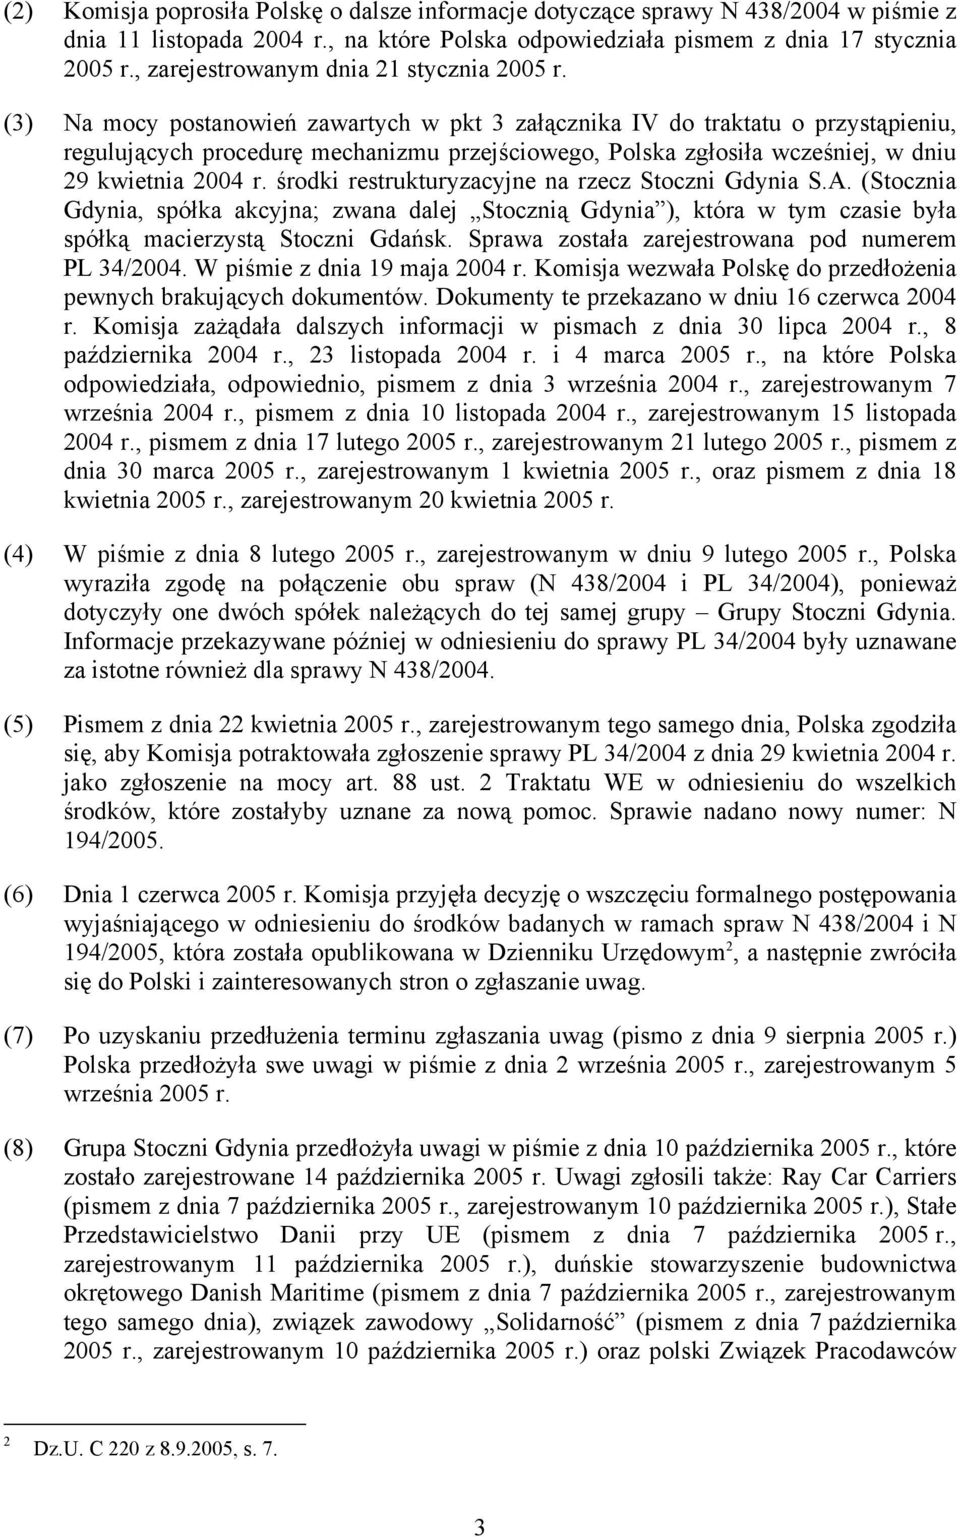 (3) Na mocy postanowień zawartych w pkt 3 załącznika IV do traktatu o przystąpieniu, regulujących procedurę mechanizmu przejściowego, Polska zgłosiła wcześniej, w dniu 29 kwietnia 2004 r.